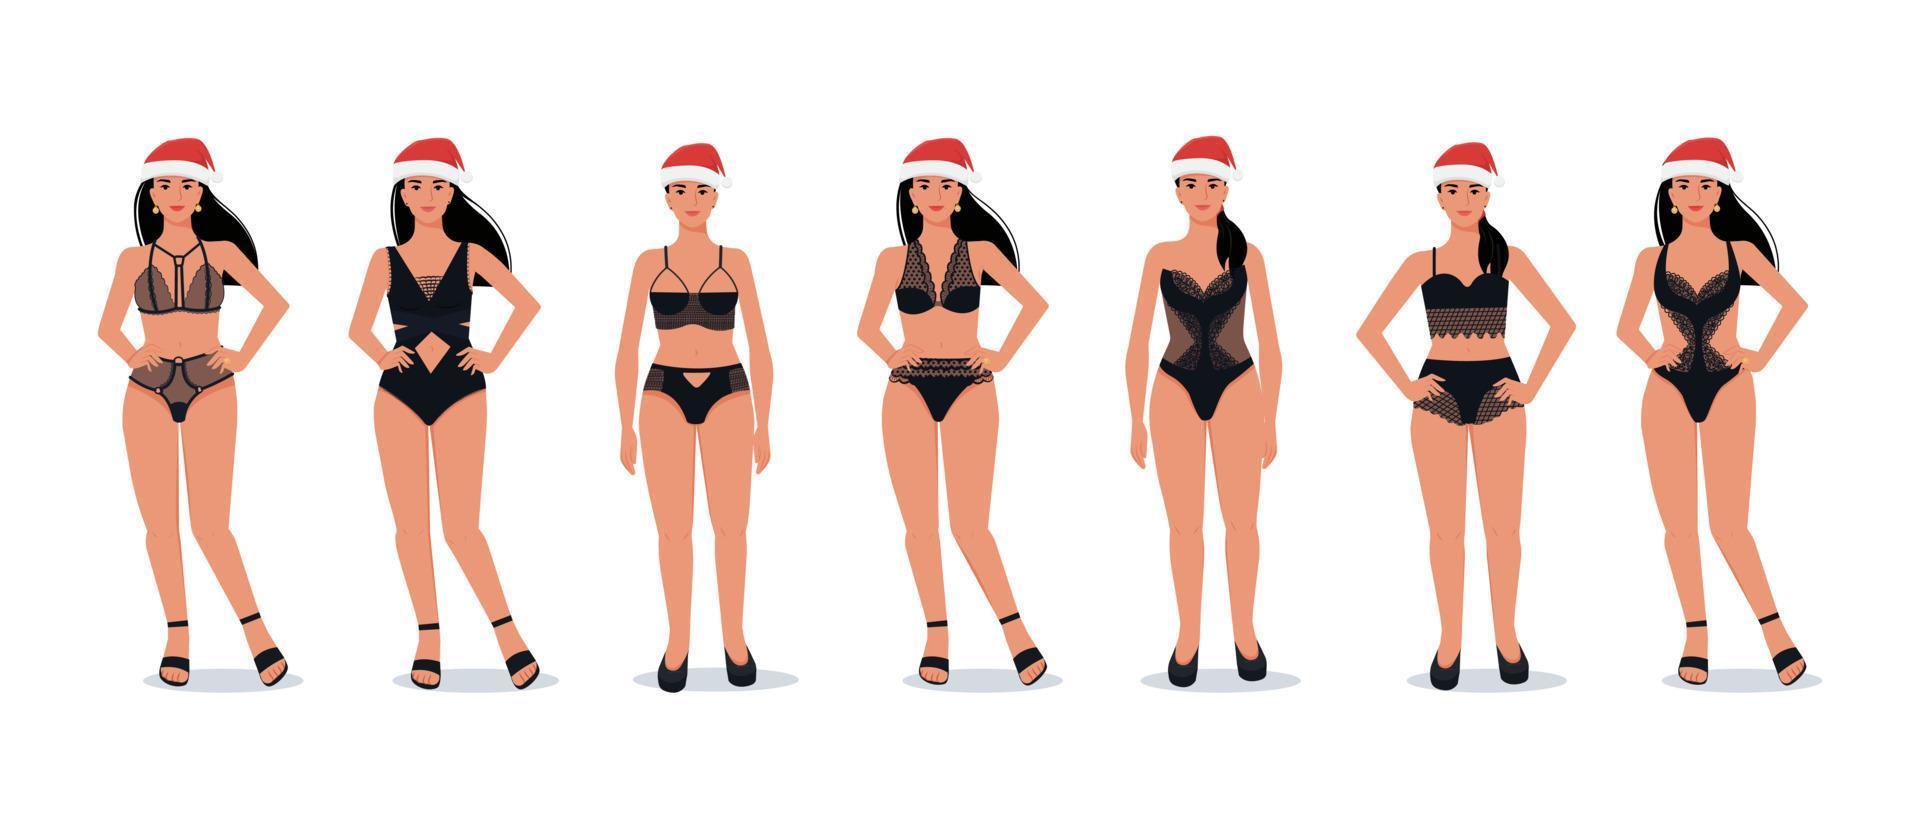 weibliches modell in schwarzer spitzenwäsche und weihnachtsmütze. Reihe von Mode-Dessous-Modellen. Vektor-Illustration vektor